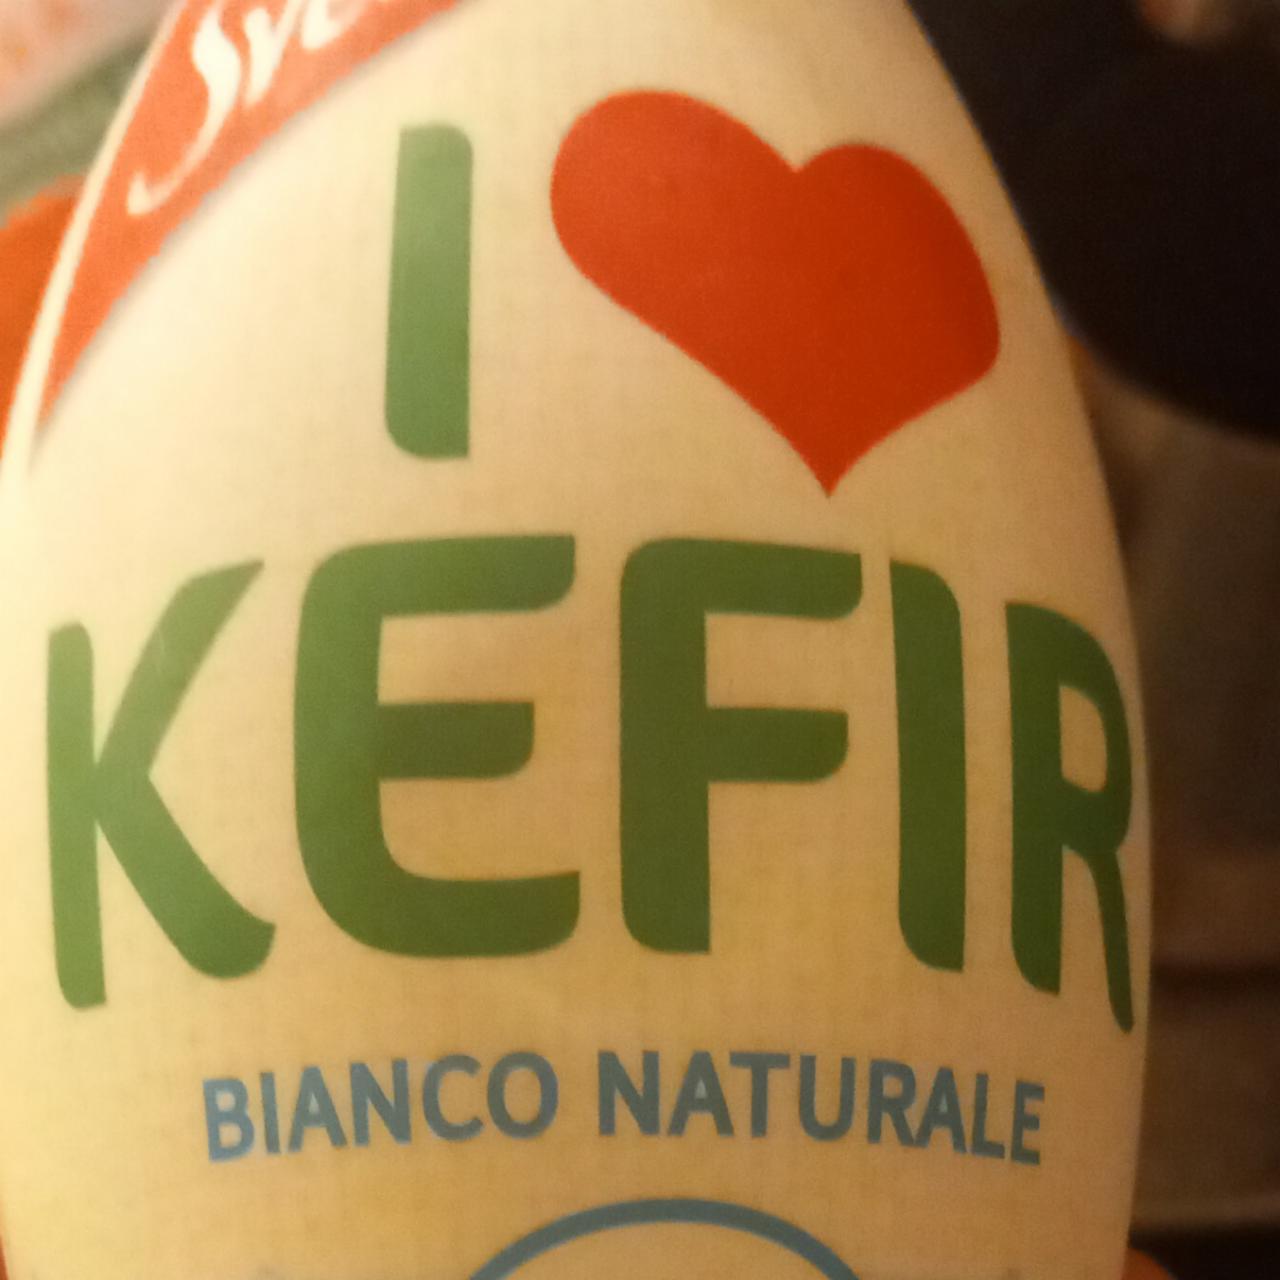 Fotografie - I love kefir zero bianco naturale